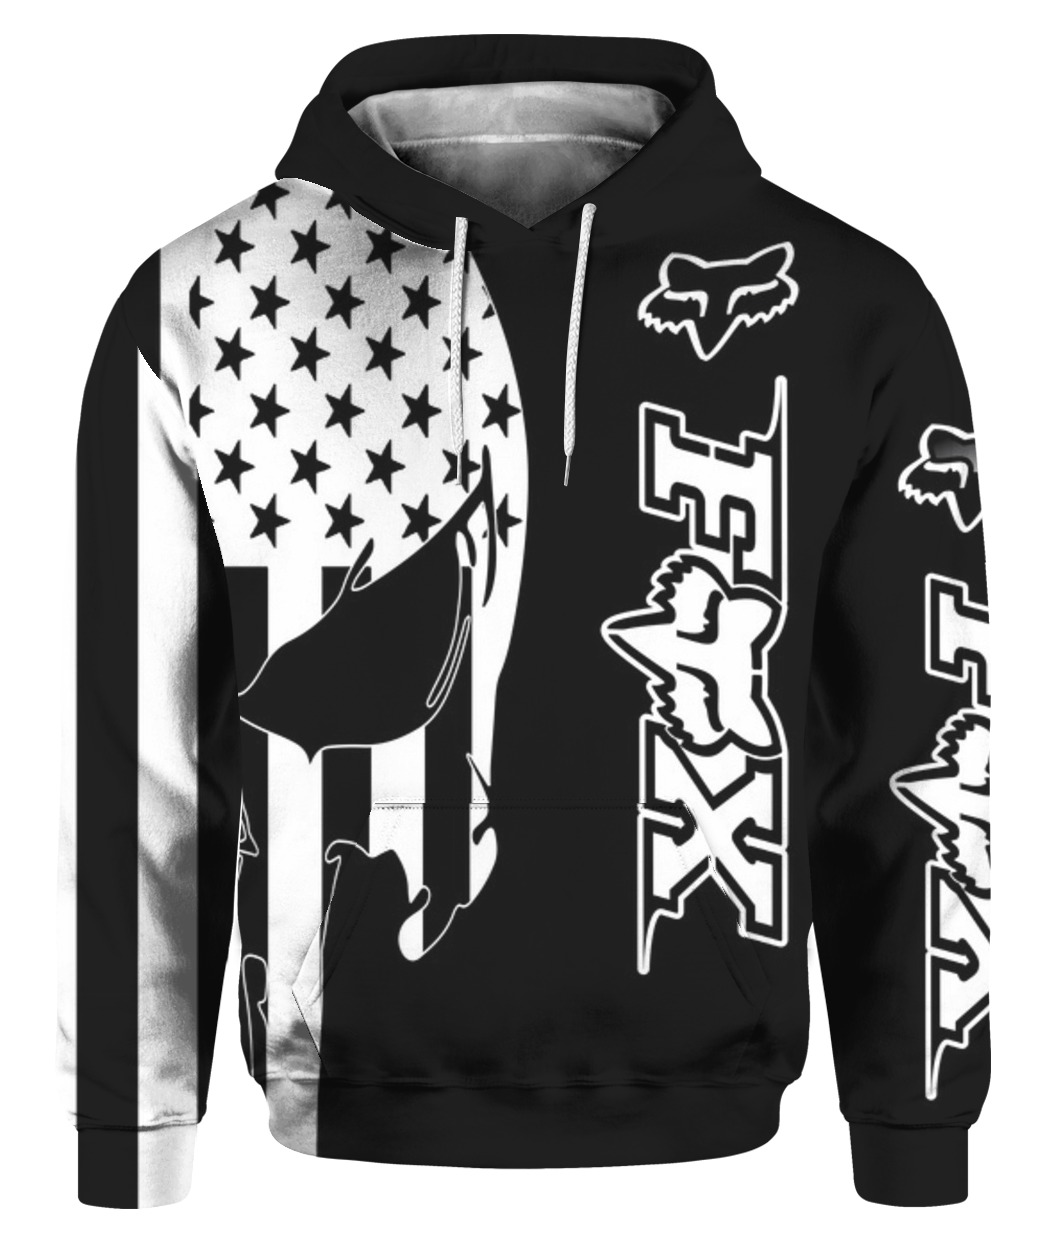 American flag skull fox racing full printing hoodie 1